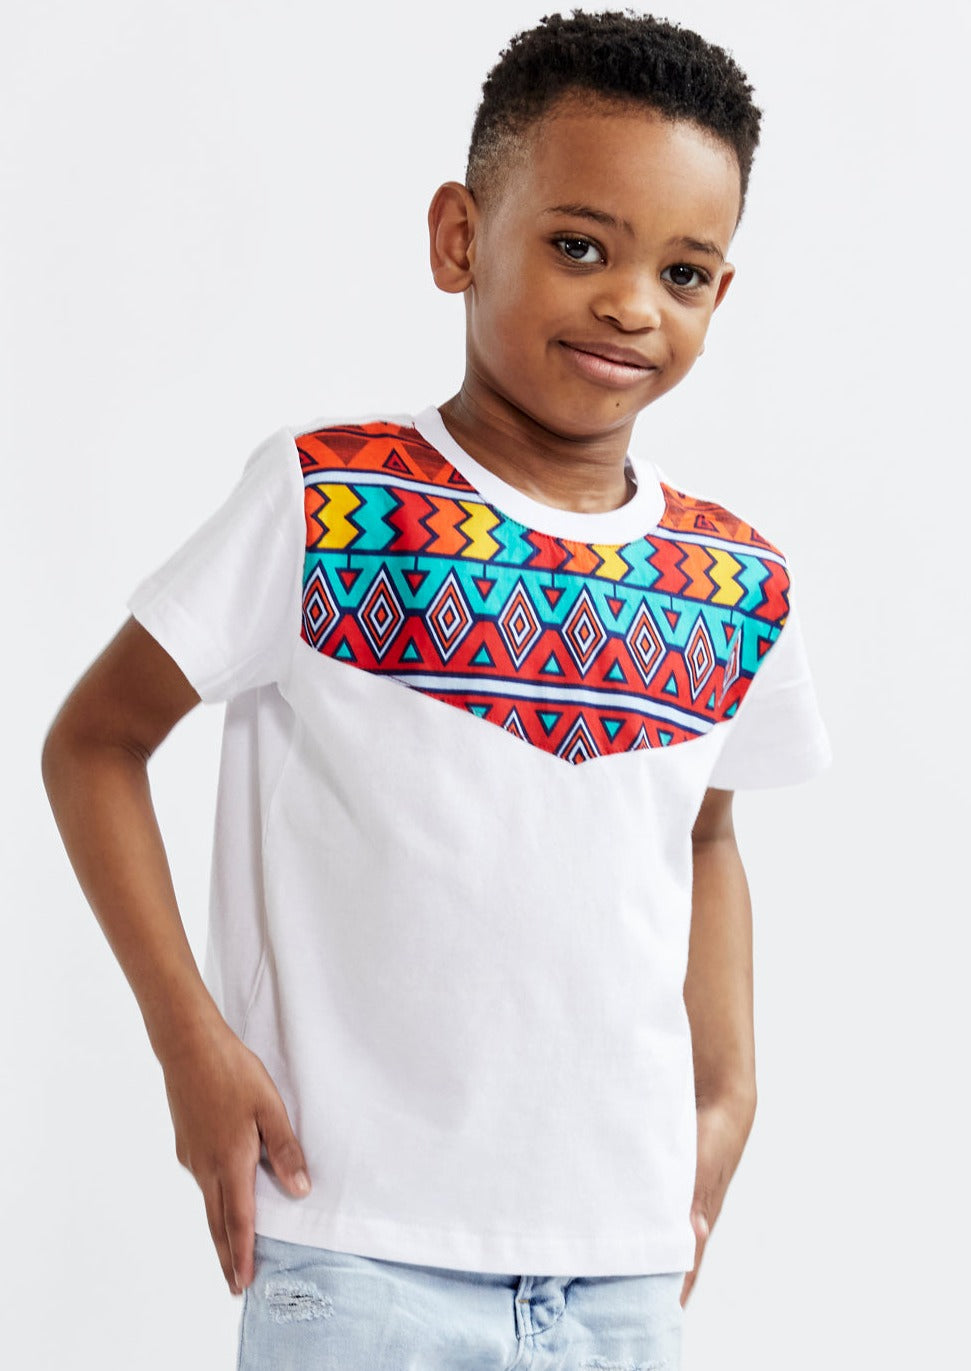 Haji Kids' Unisex African Print T-shirt (White/Rainbow Tribal)